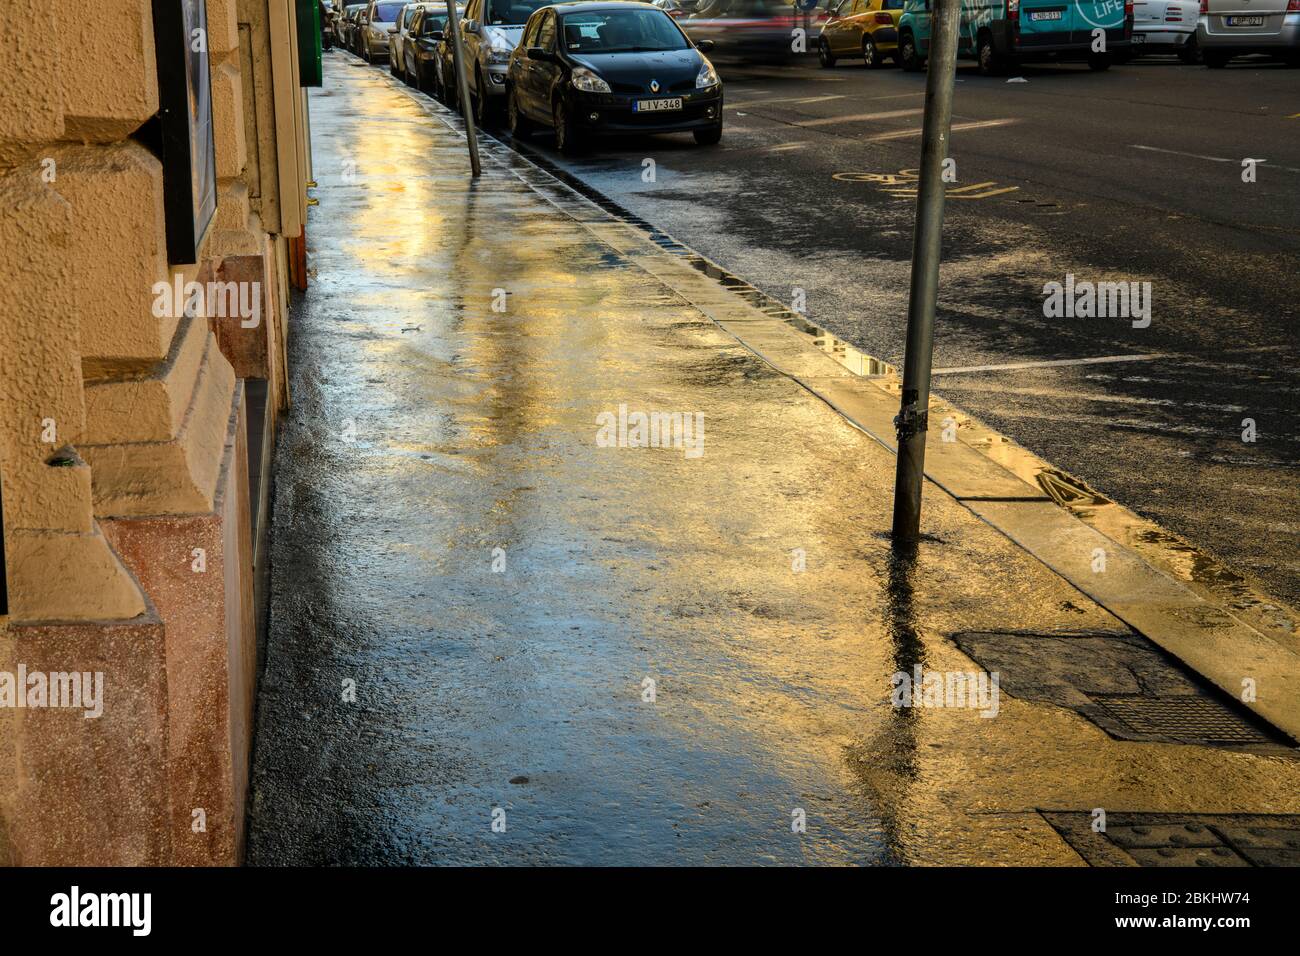 Innenstadt von Budapest (Pest) - Reflexionen in einer nassen Straße Bürgersteig., Budapest, Central Hungary, Ungarn Stockfoto